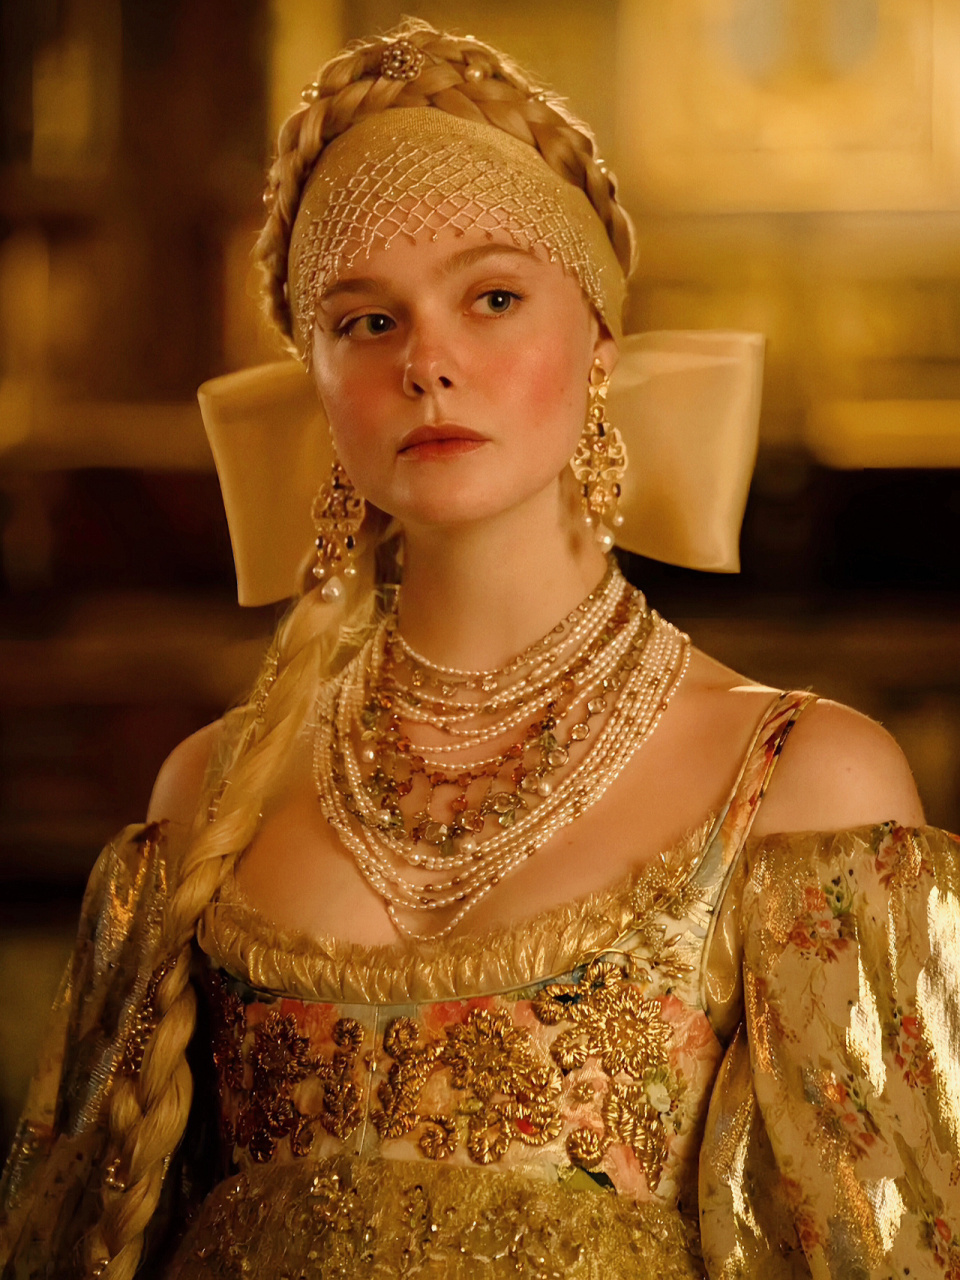 俄国女皇《凯瑟琳大帝》 由艾丽·范宁和尼古拉斯·霍尔特主演的热播